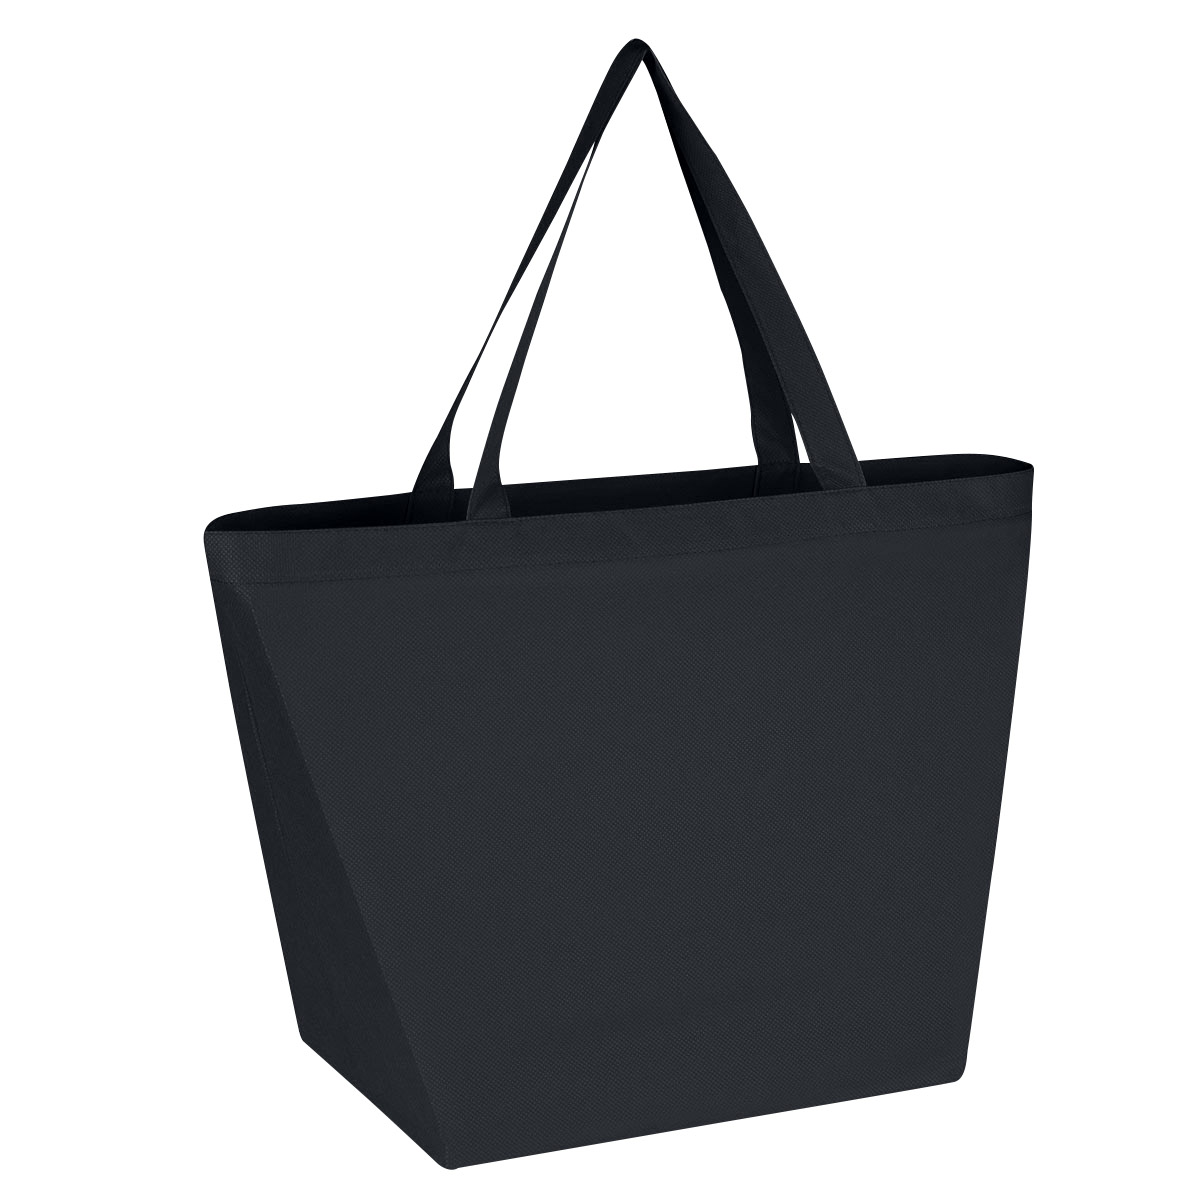 スマートフォン/携帯電話 スマートフォン本体 3333 Non-Woven Budget Shopper Tote Bag - Hit Promotional Products